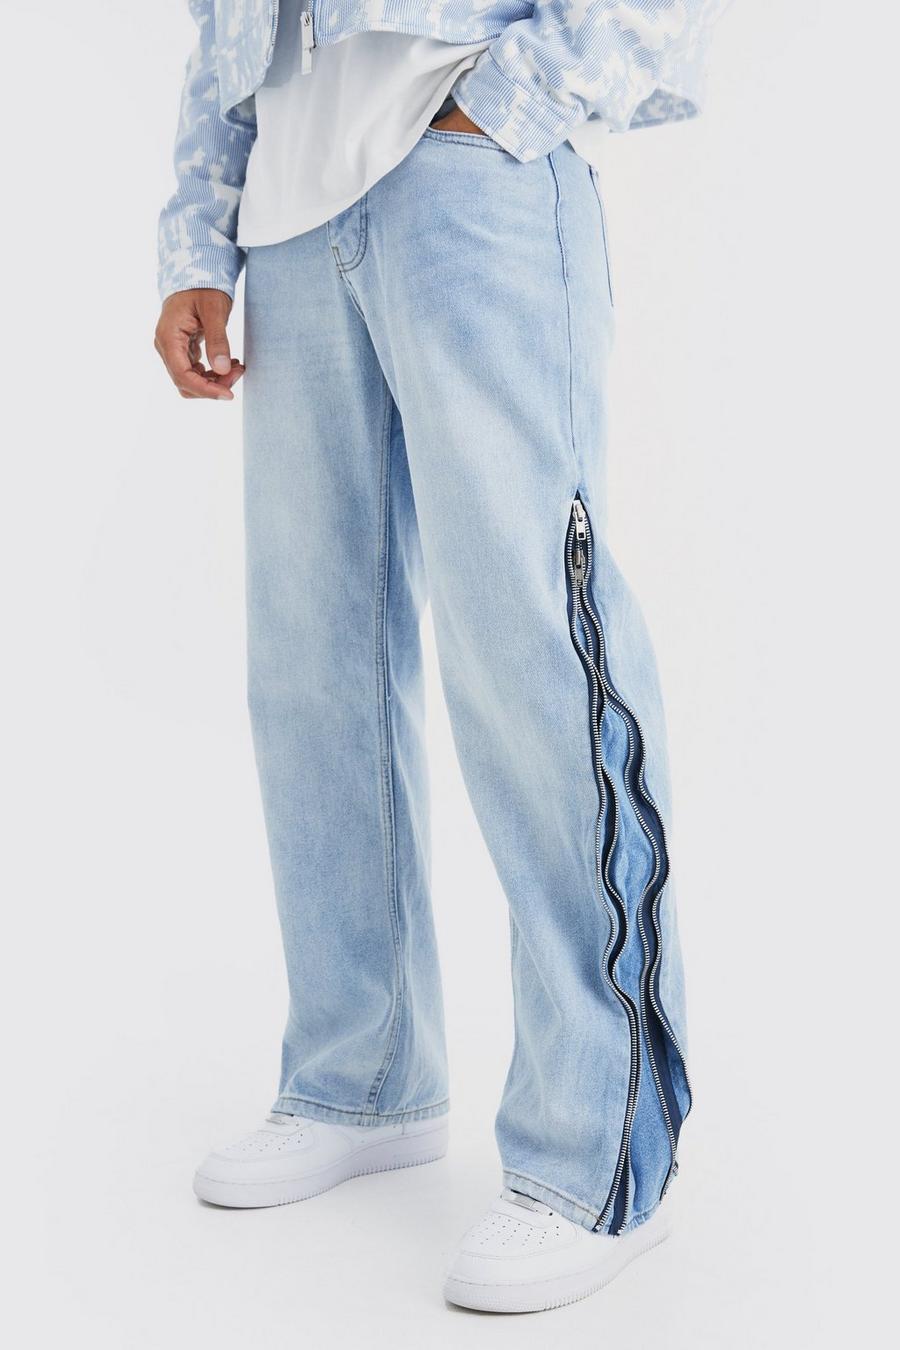 niebieskie spodnie jeans guziki kieszenie zamki